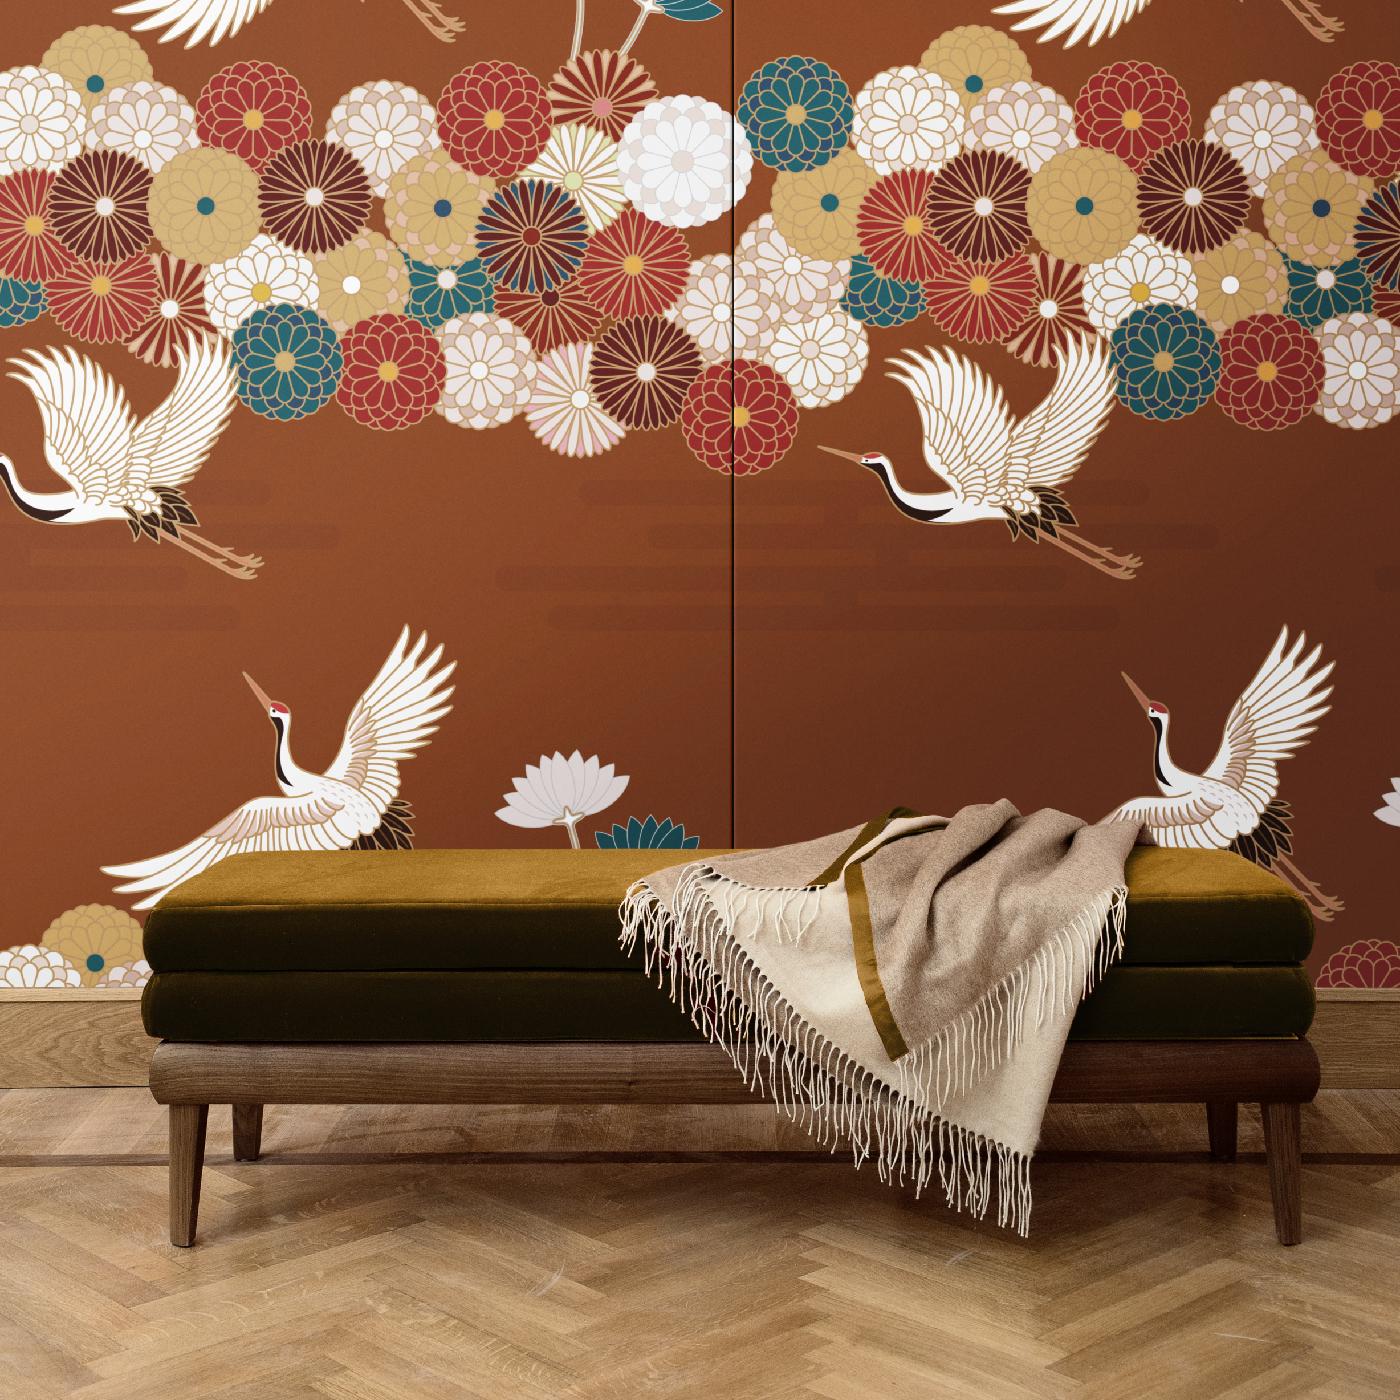 Diese großartige Wanddekoration setzt einen dramatischen Akzent an jeder Wand im Haus. Dieses von der japanischen Kunst inspirierte Design zeigt stilisierte Blumen und fliegende Störche auf einem atemberaubenden karminroten Hintergrund aus Baumwolle